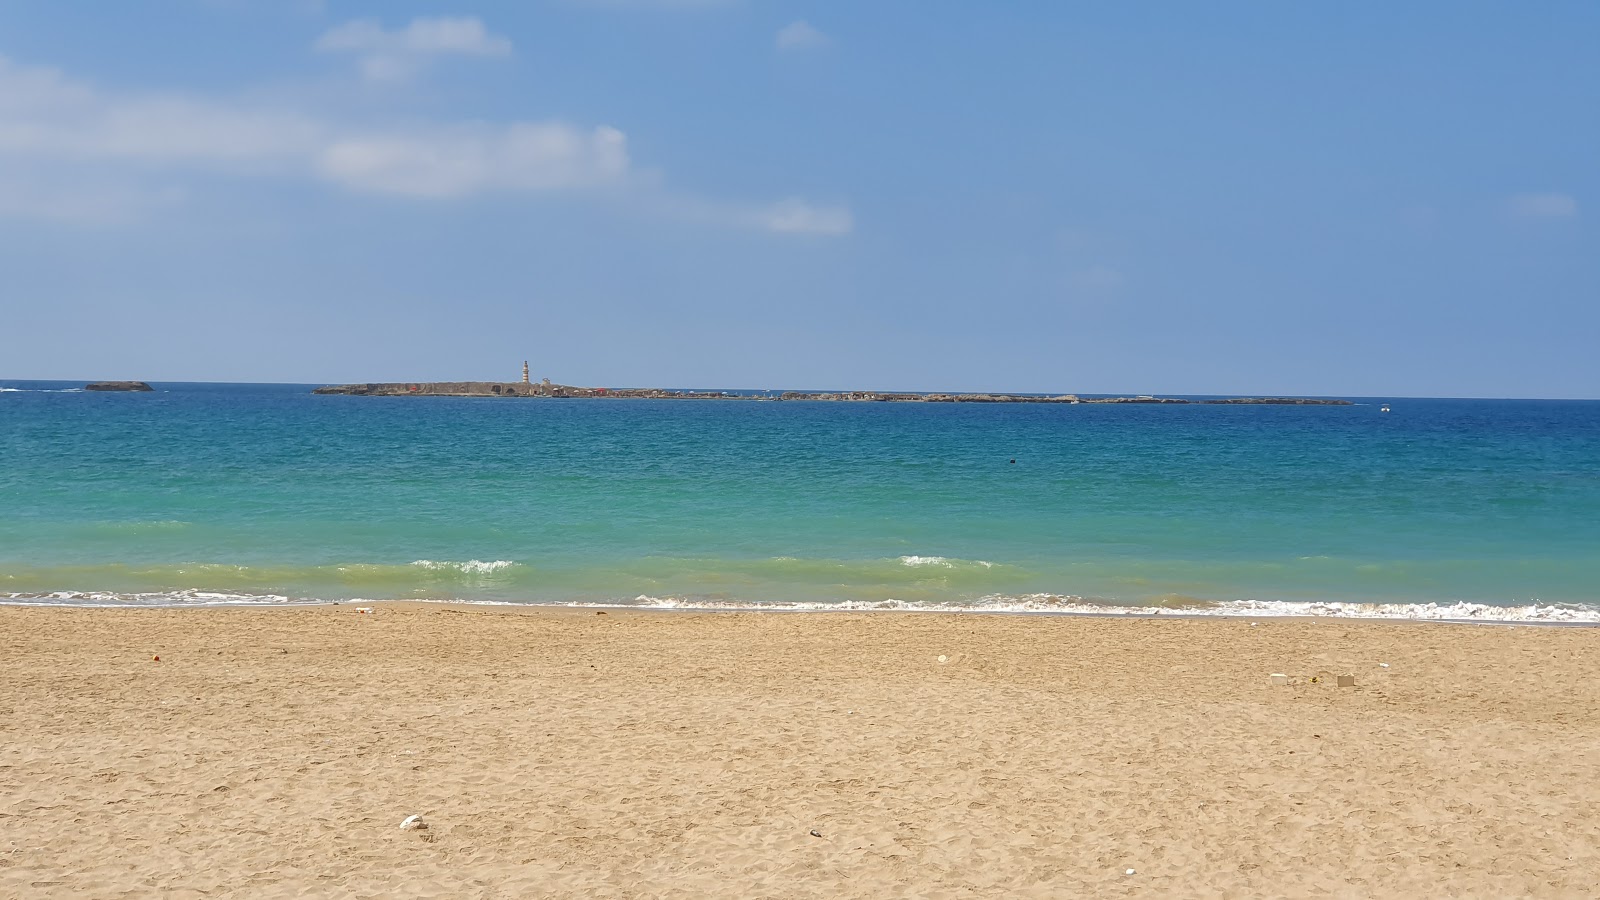 Zdjęcie Saida Beach z przestronna plaża